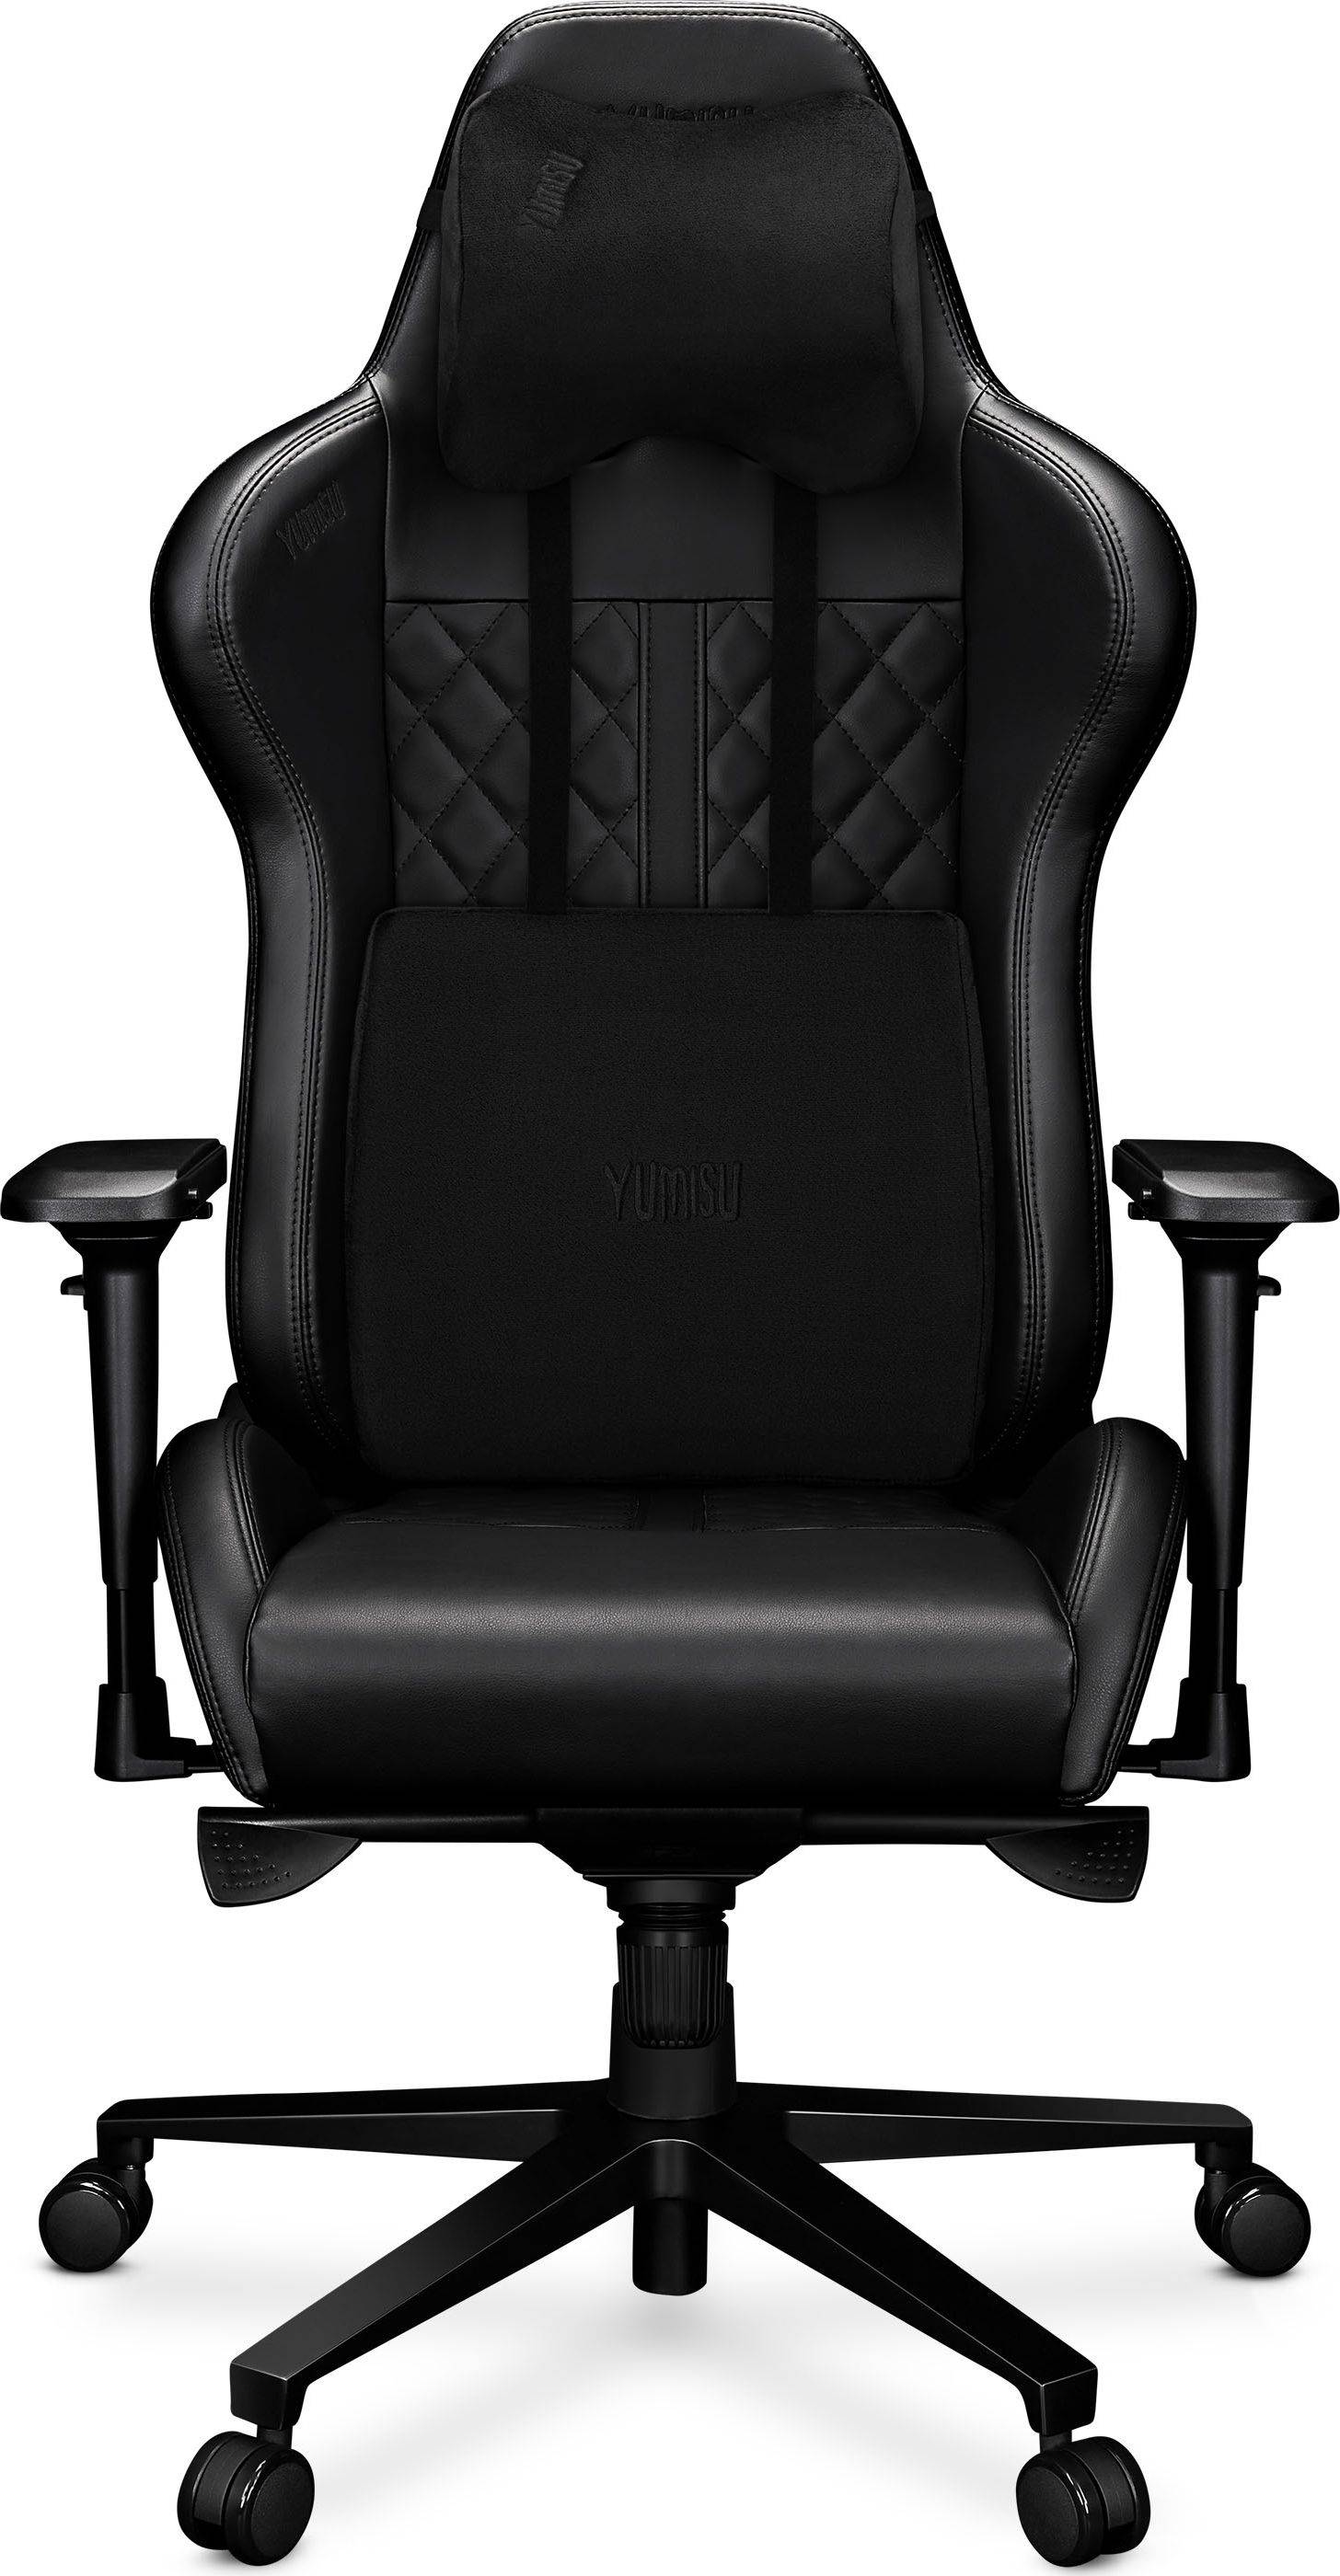  Bild på Yumisu 2050 Gaming Chair - Black gamingstol